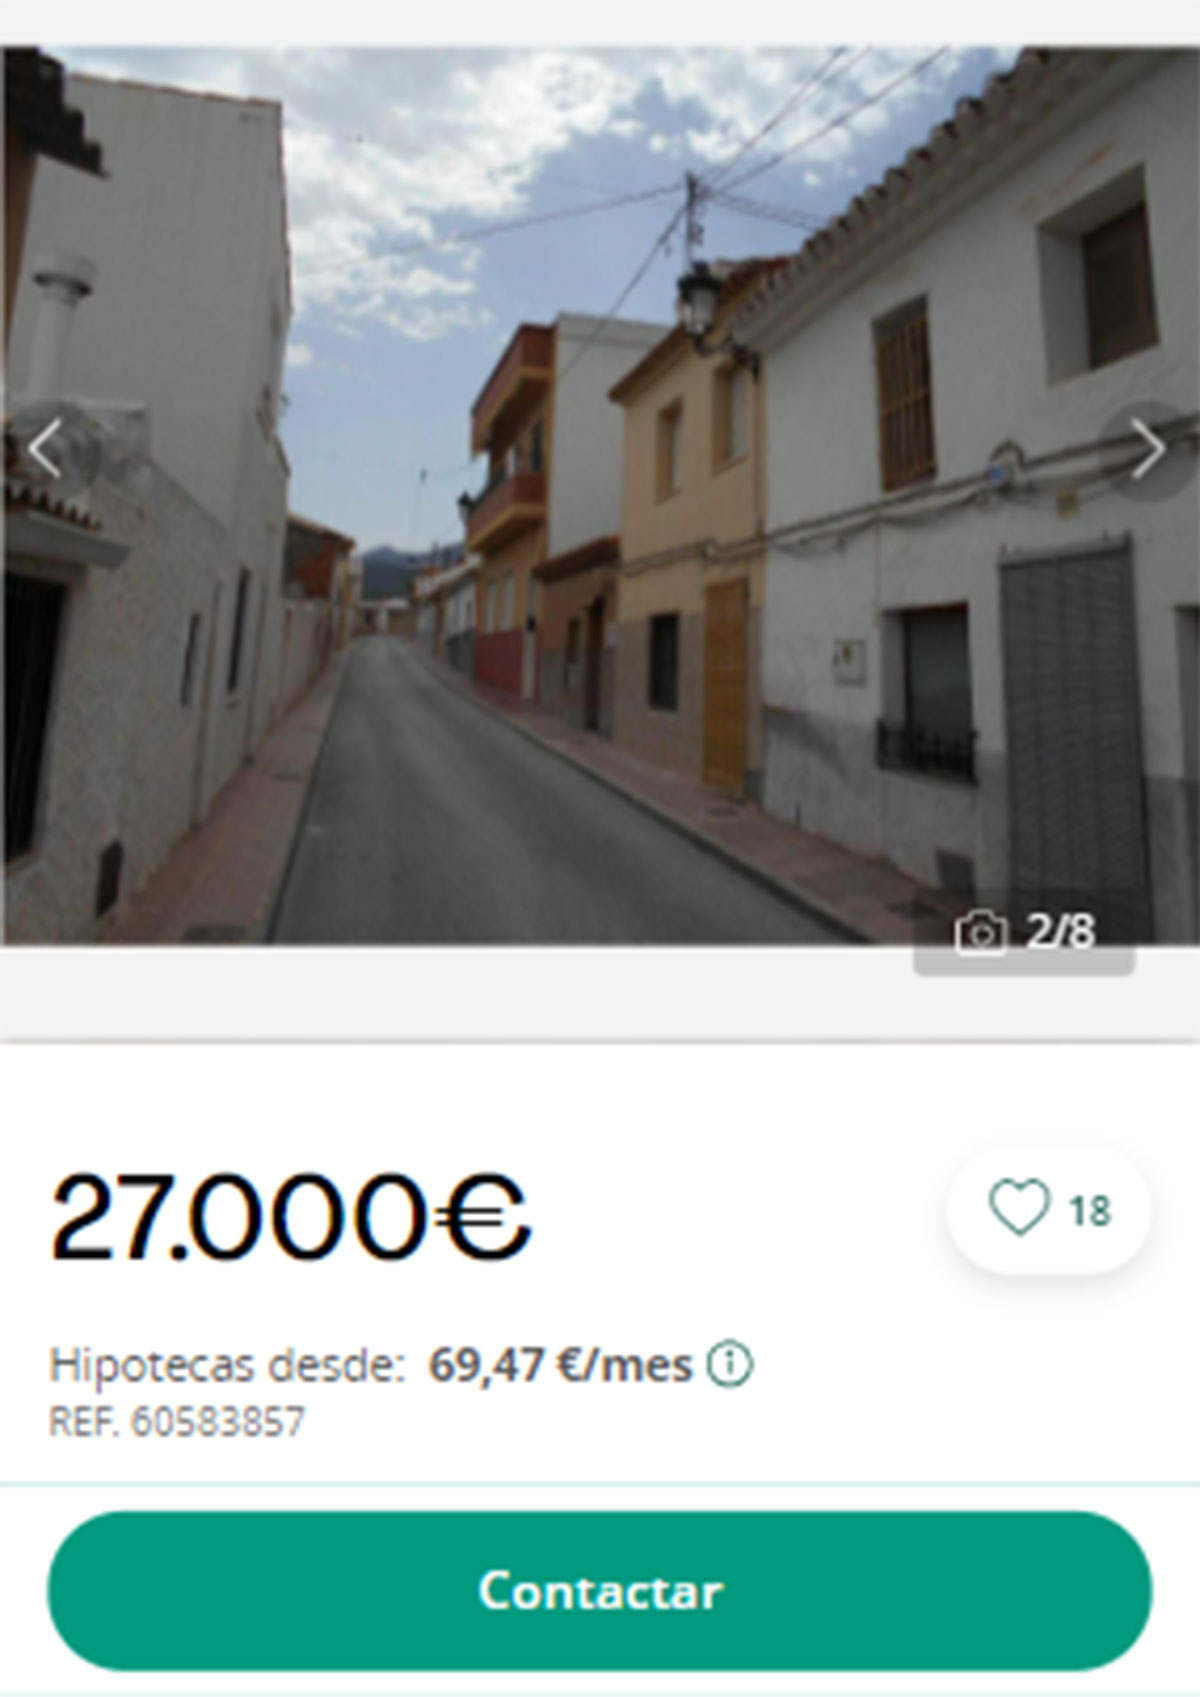 Piso en pueblos de Alicante por 27.000 euros